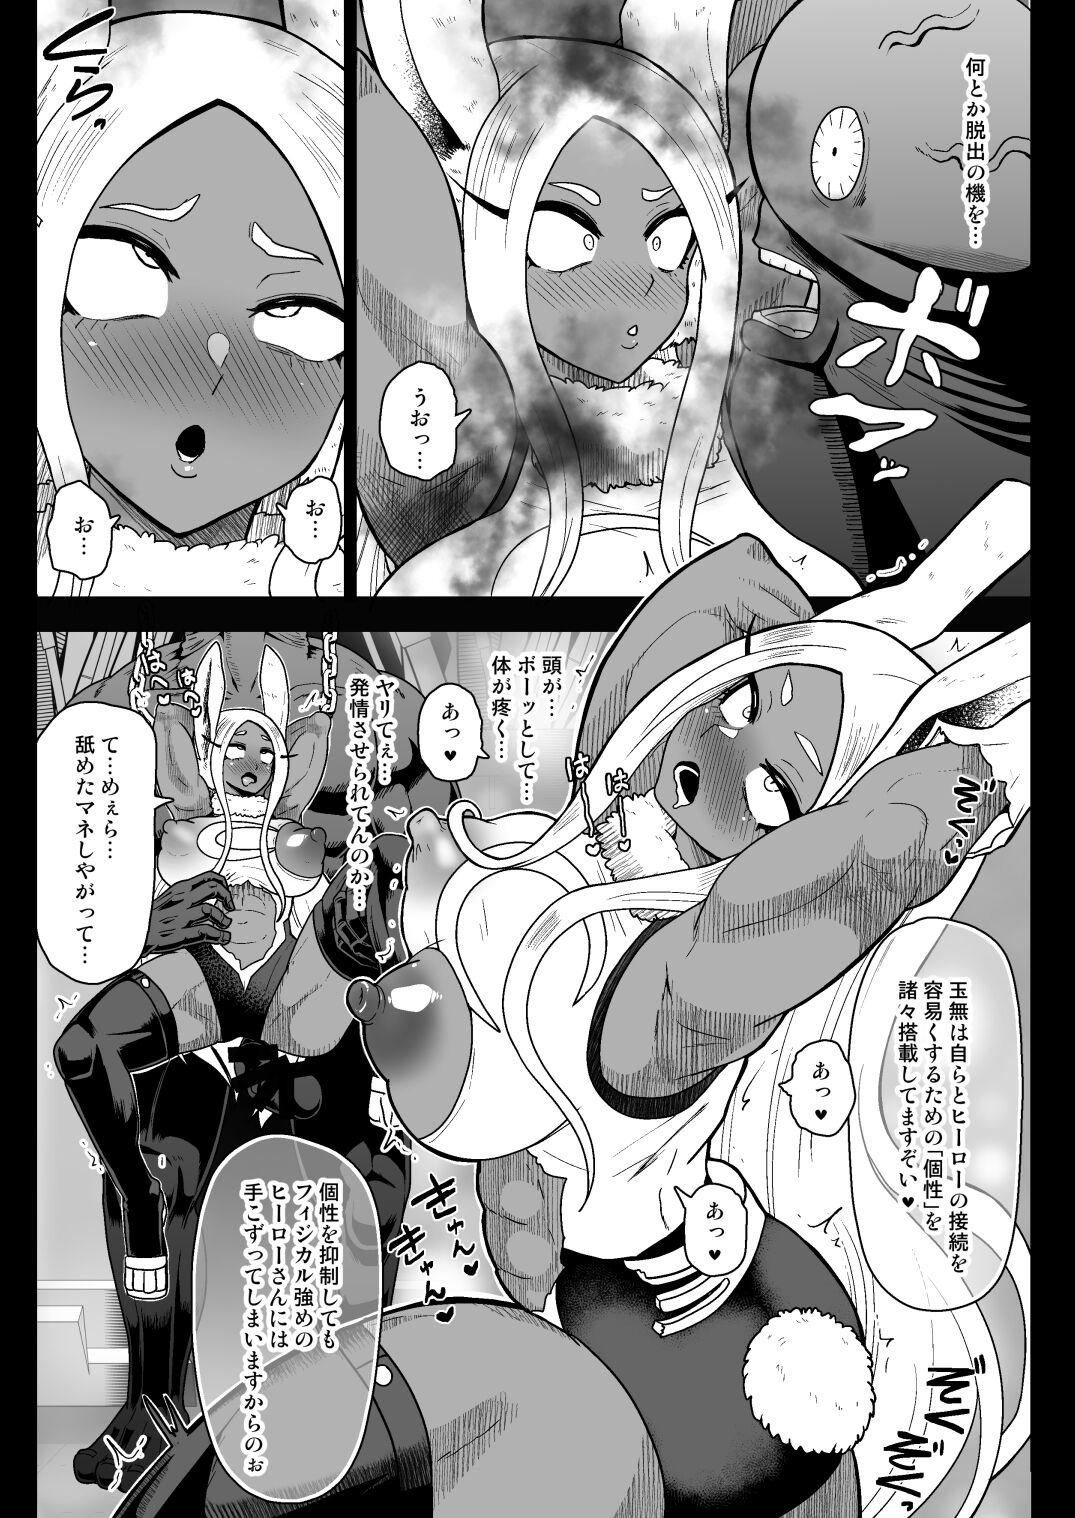 Wank Ra*t Hero Mirko VS Android Tamanashi - My hero academia | boku no hero academia Hot Mom - Page 10